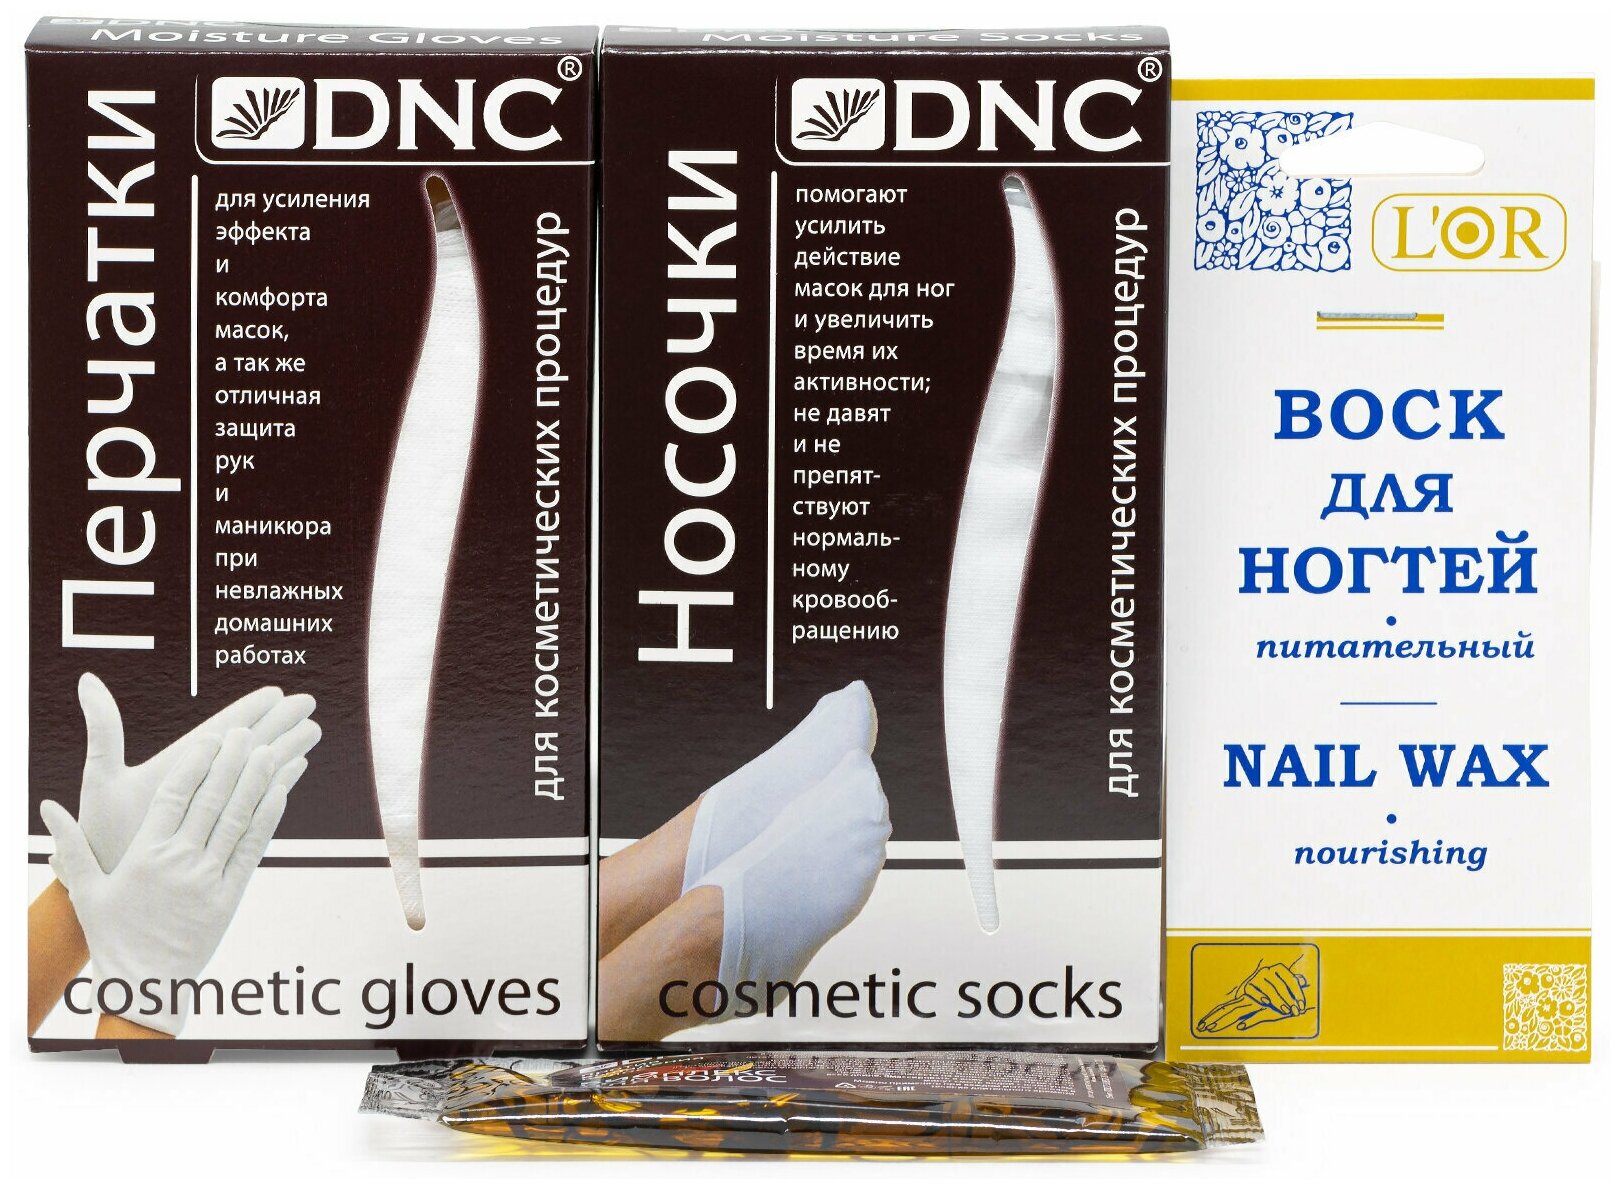 Набор: DNC Перчатки, Носочки, L'Or Воск для ногтей питательный 5 мл и подарок Масло для волос 15 мл